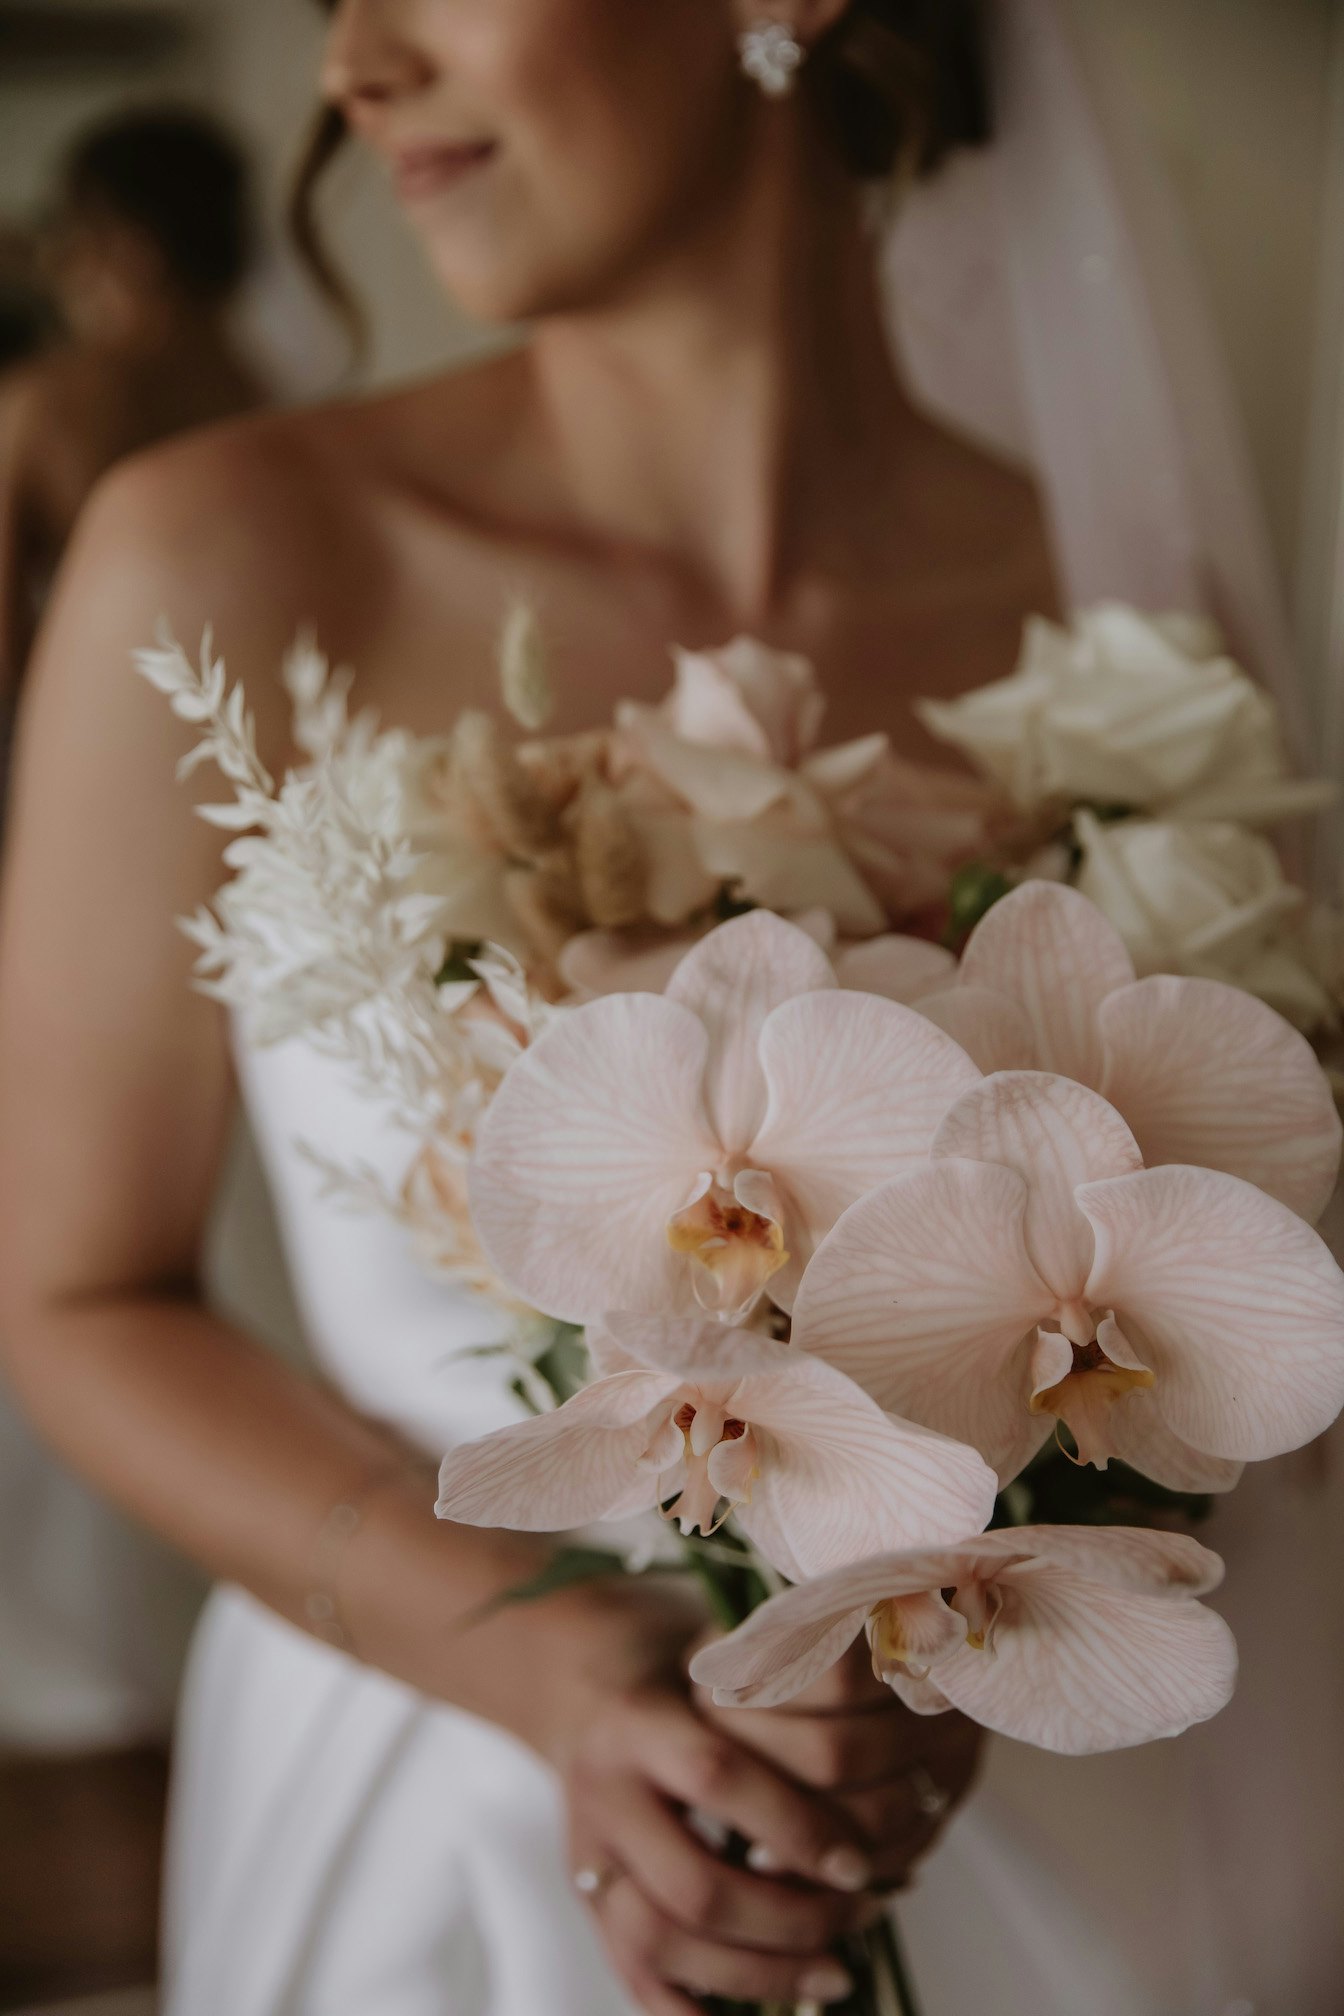 Bride holding bouquet 